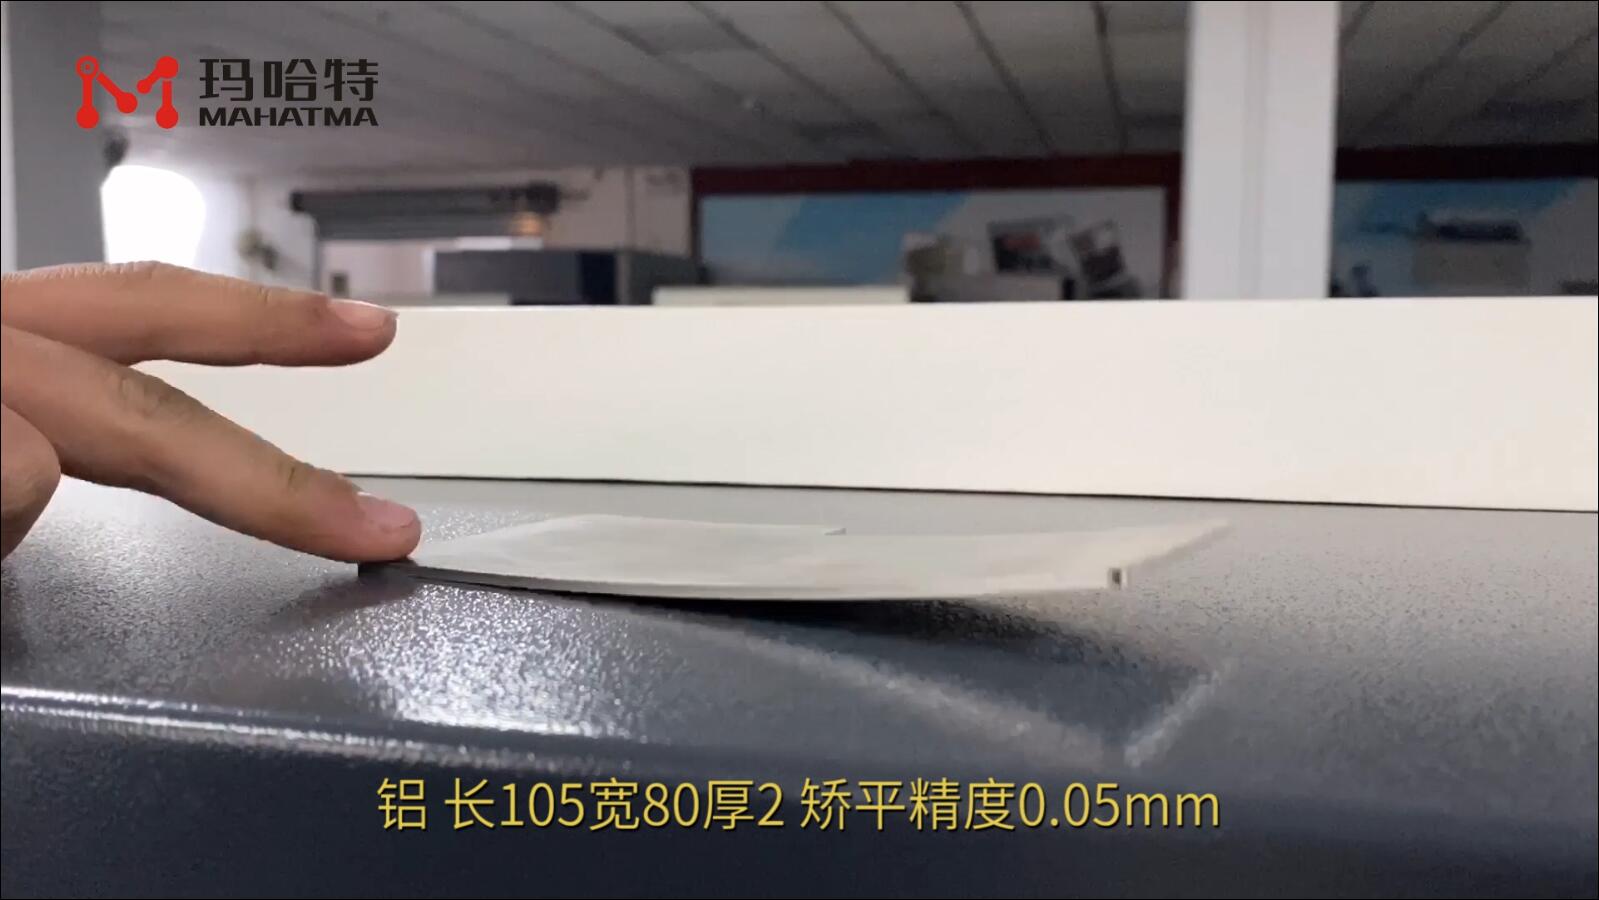 铝 MHT30-400 长方形 长105宽80厚2 矫平精度0.05mm